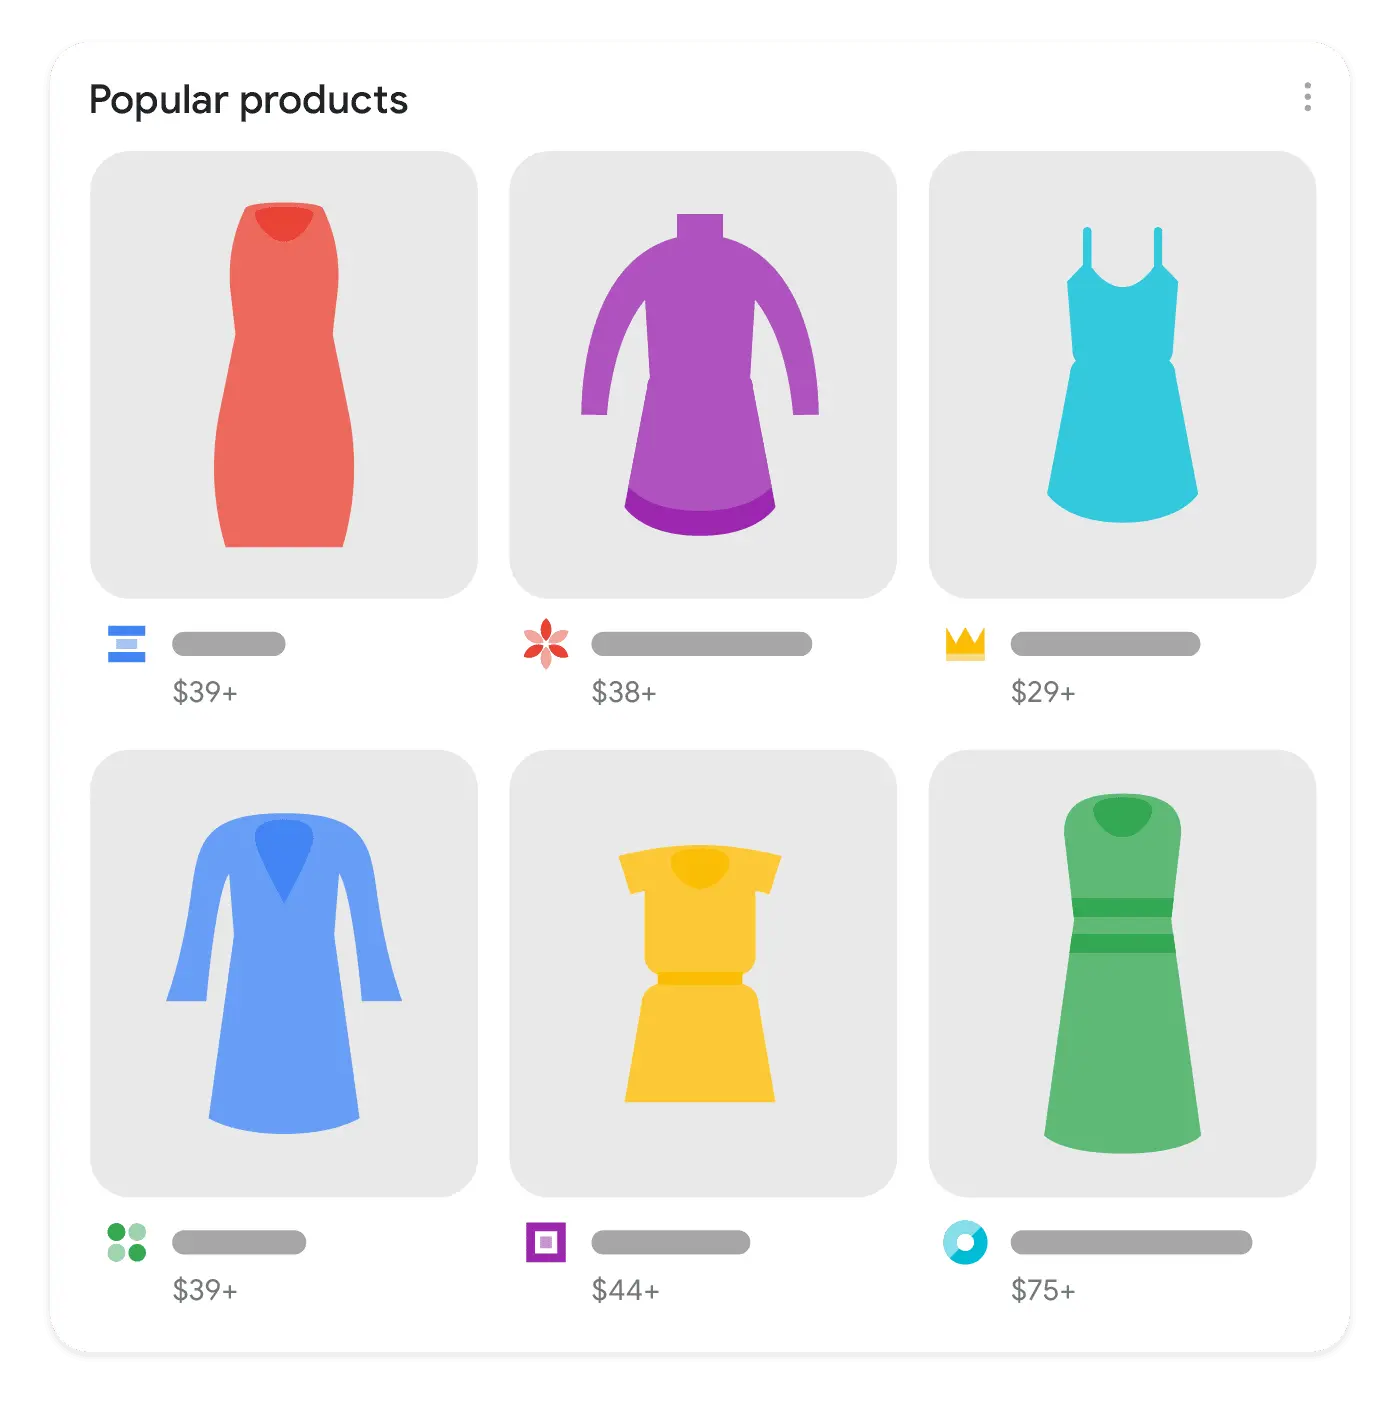 فیچر جدید محصولات محبوب (Popular products) در سرپ گوگل